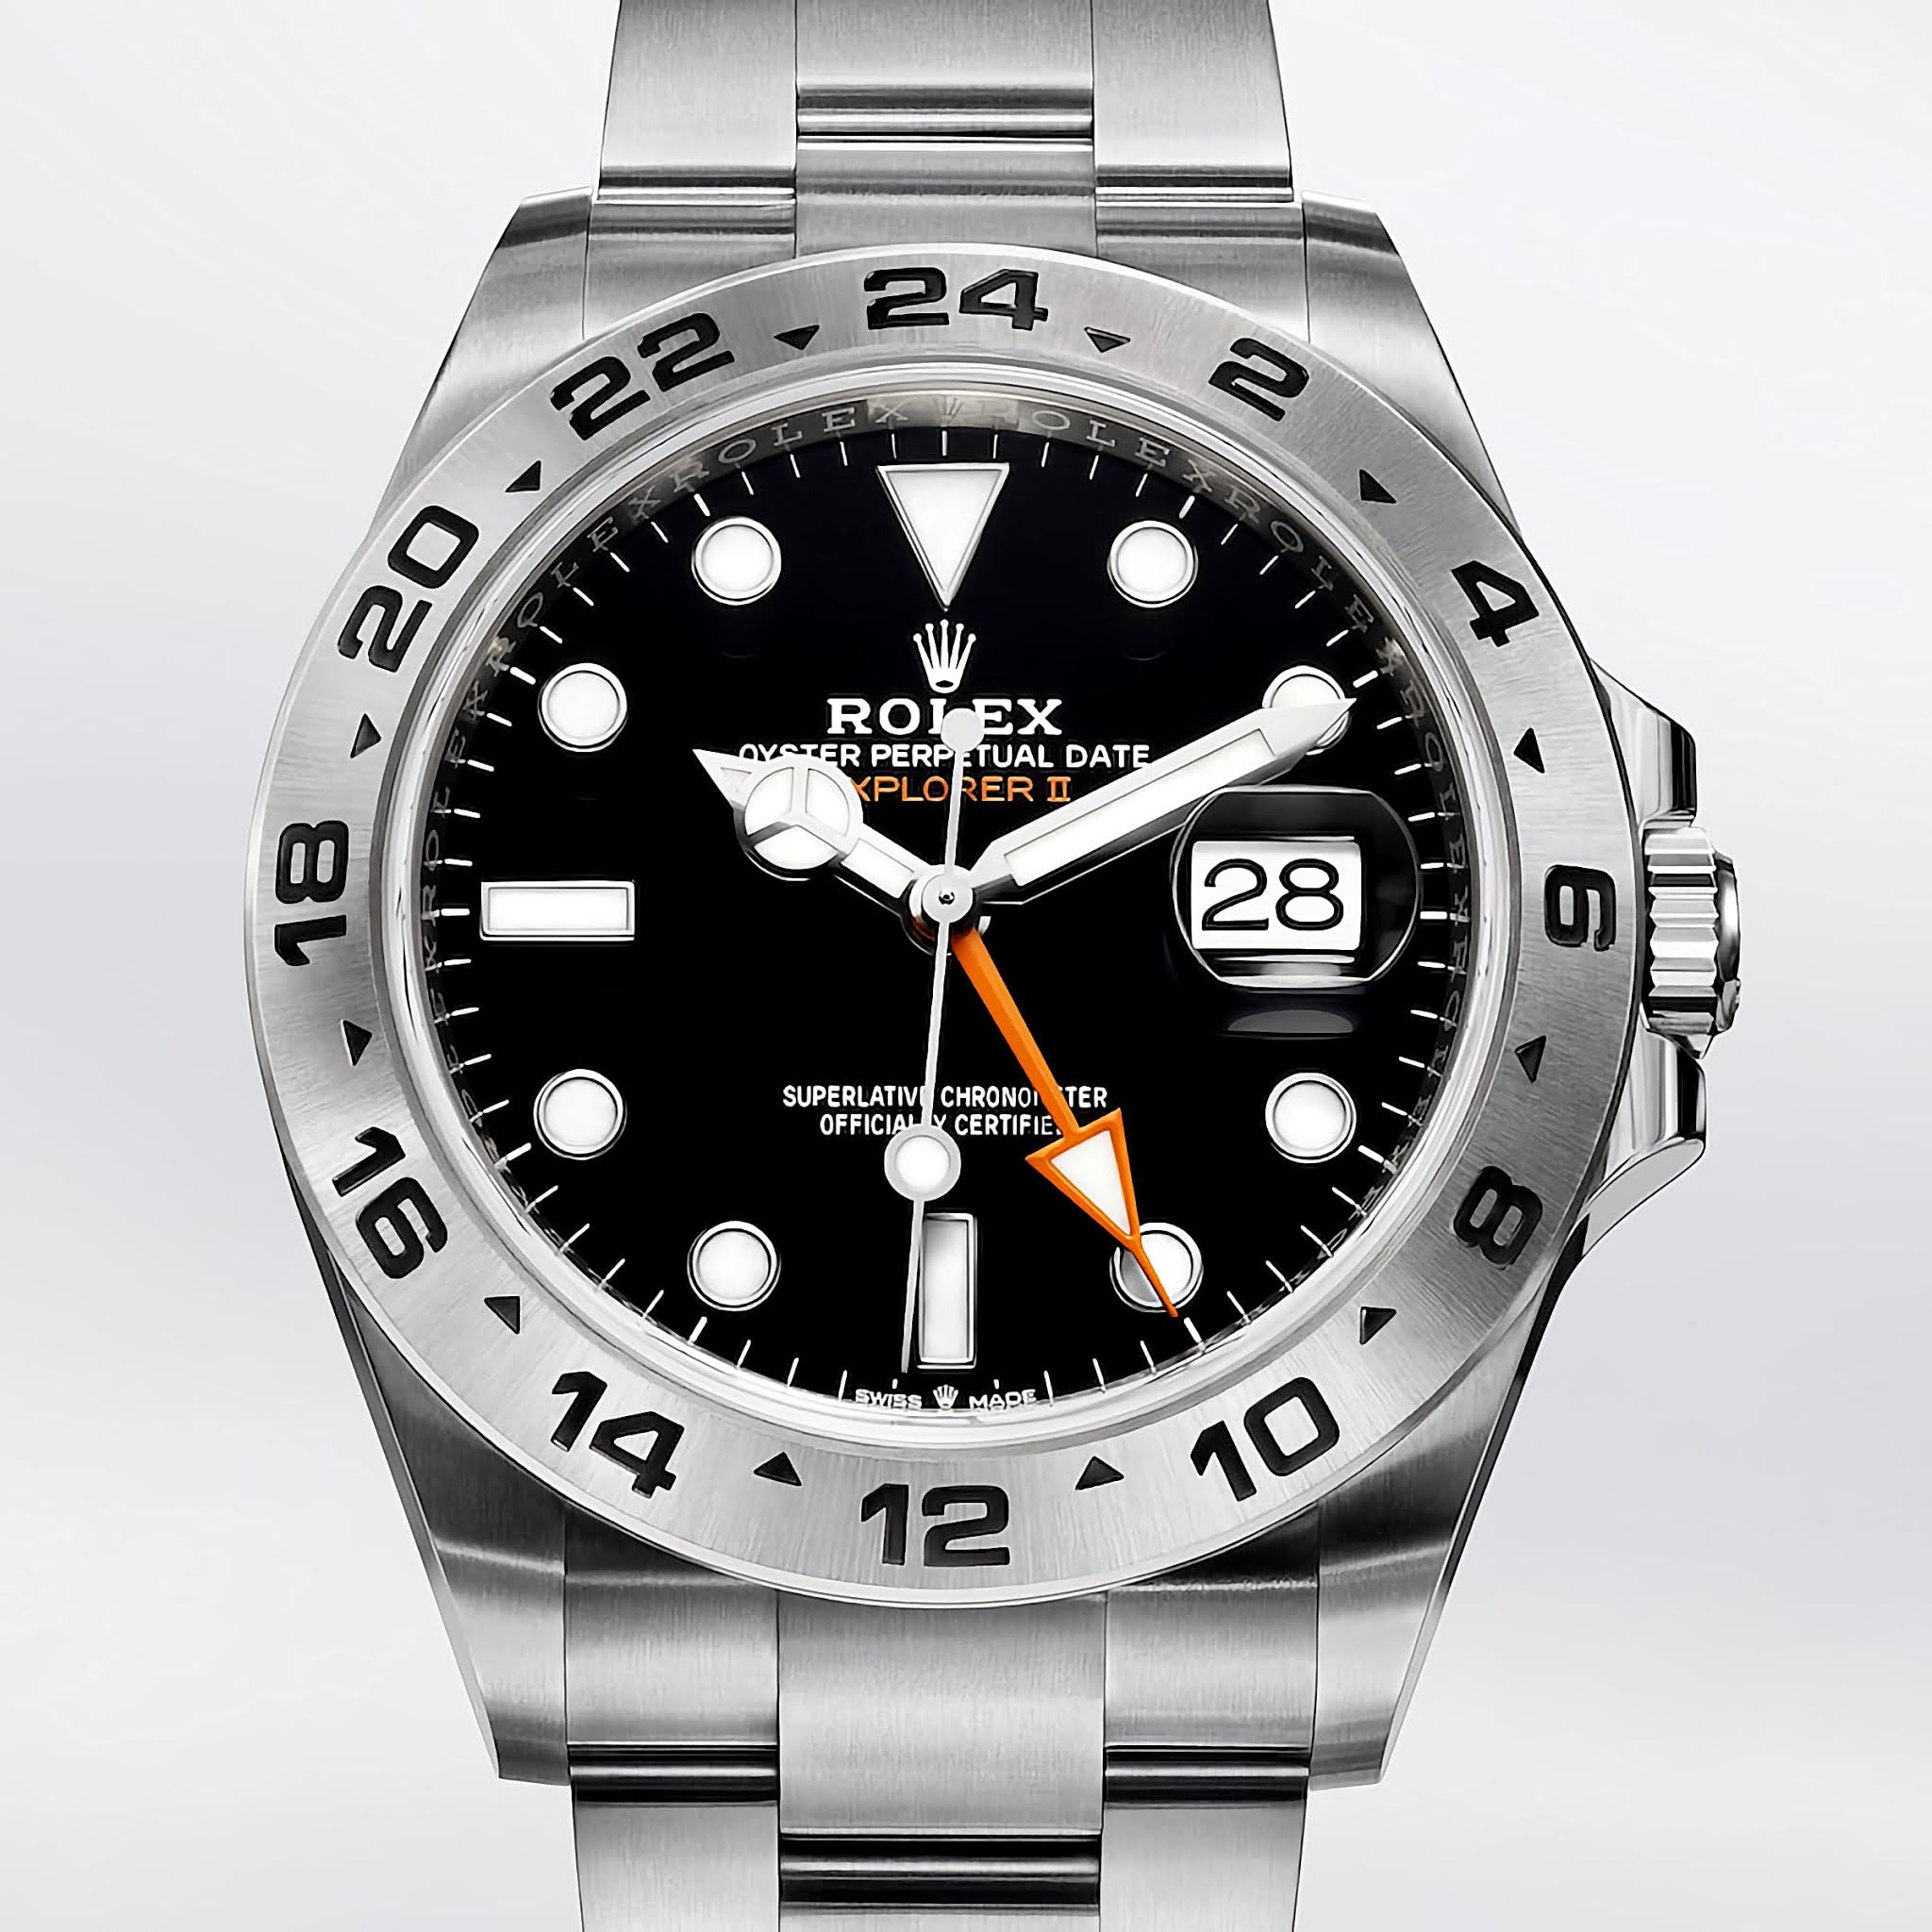 Đồng hồ Rolex là biểu tượng của sự sang trọng và phong cách của những người thành đạt. Xem hình ảnh liên quan đến đồng hồ Rolex để khám phá các kiểu dáng đẳng cấp và được trải nghiệm những tính năng vượt trội của các sản phẩm đặc biệt này.